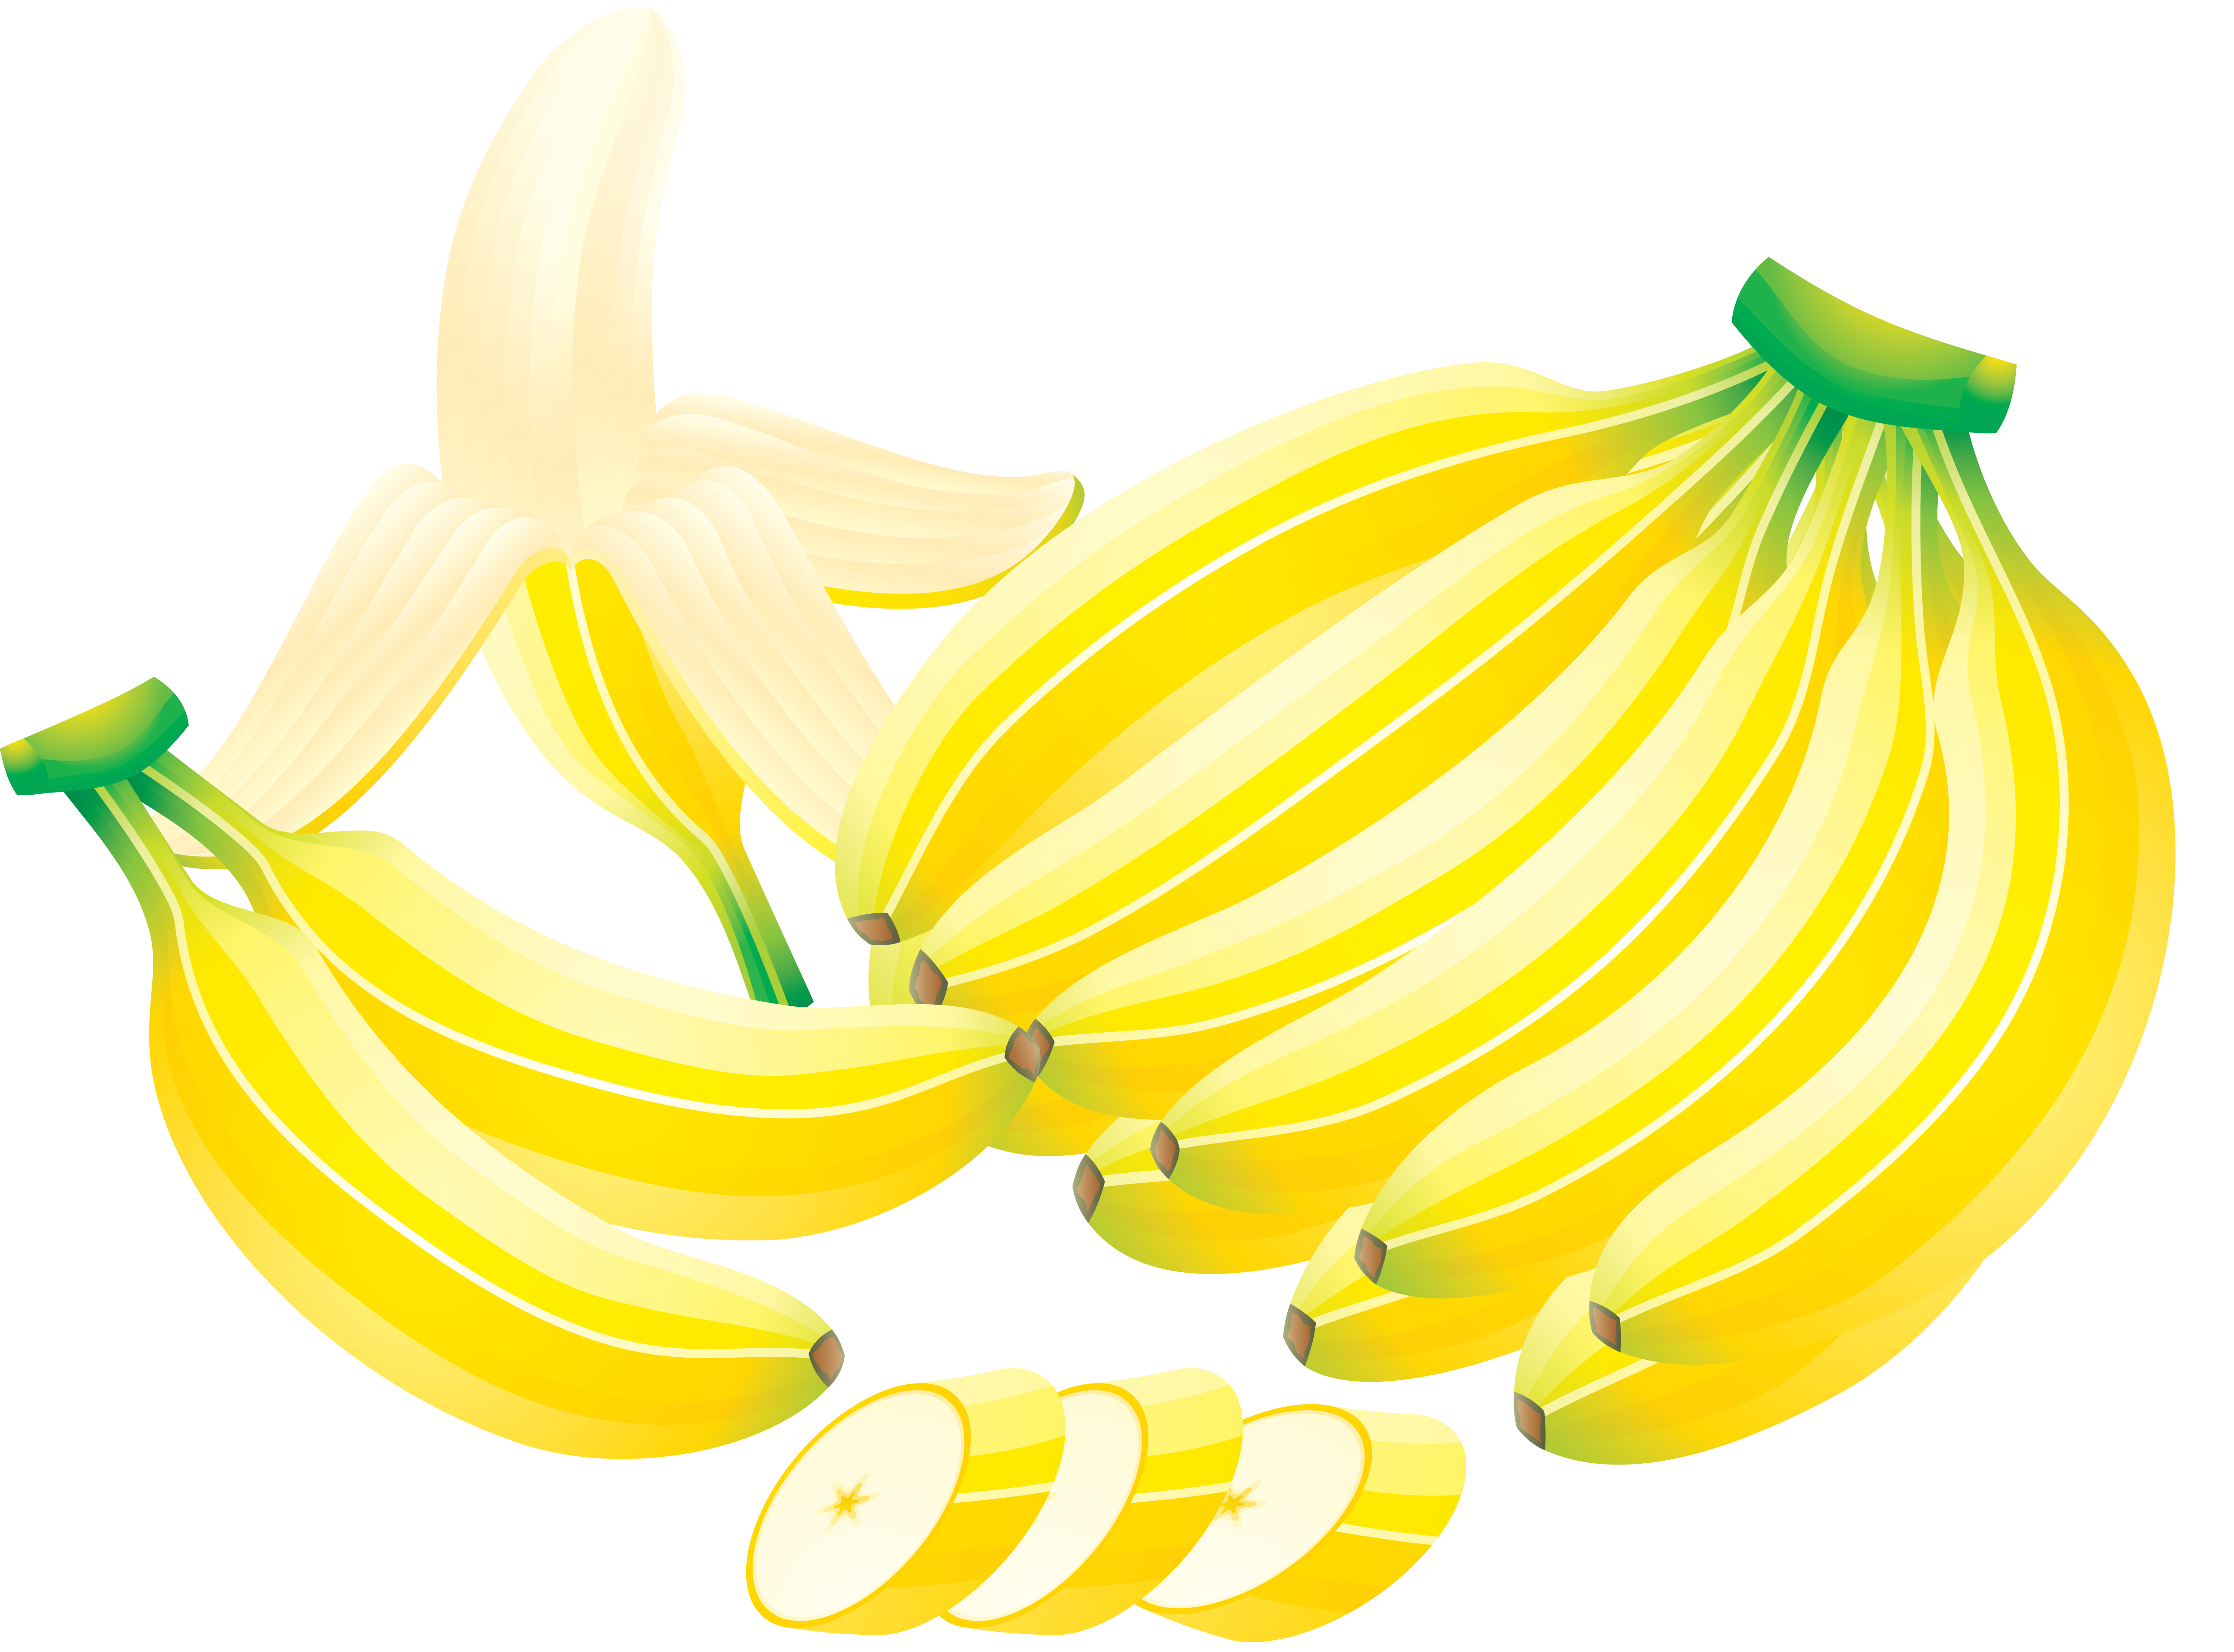 Banan pokroić nożem